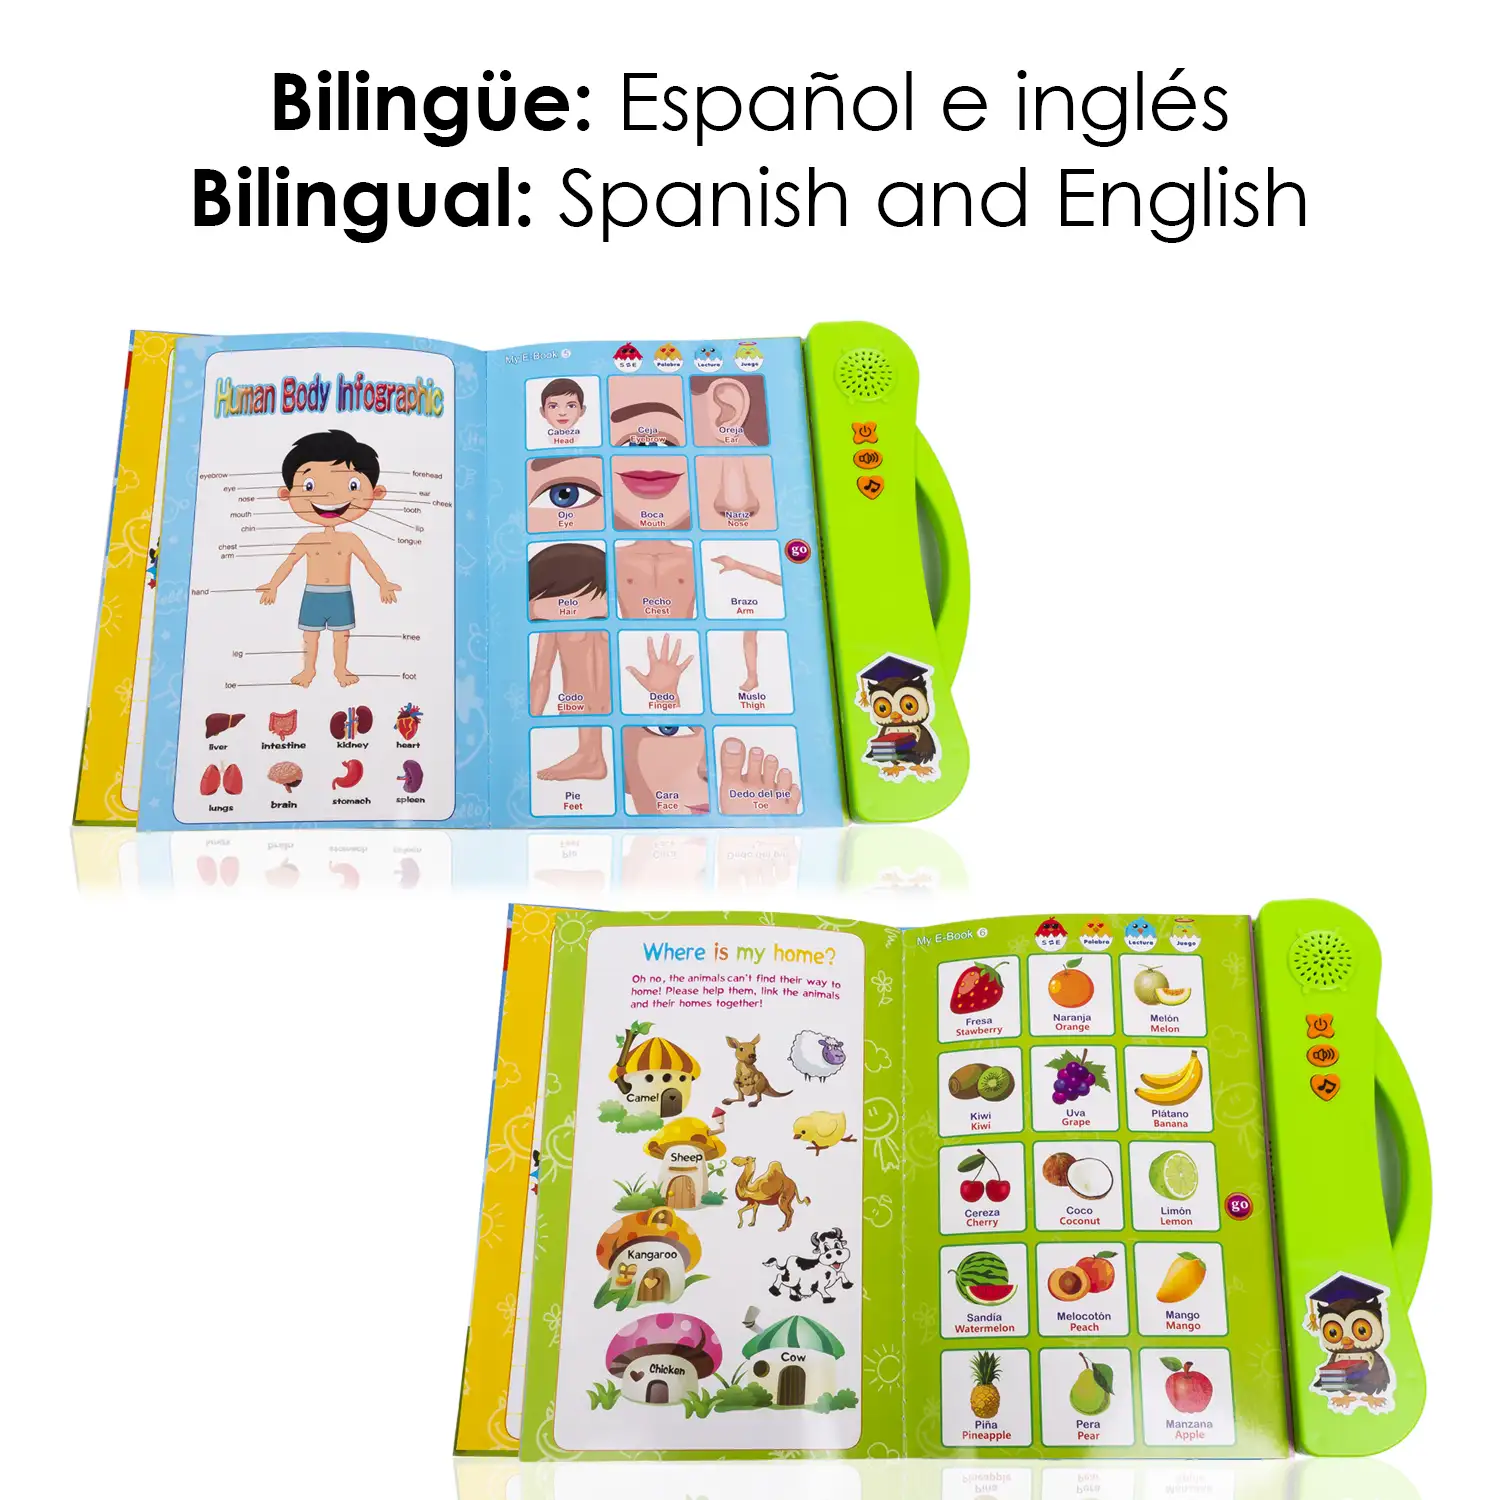 Mi E-Libro, libro electrónico educativo con sonidos, bilingüe en español e inglés.